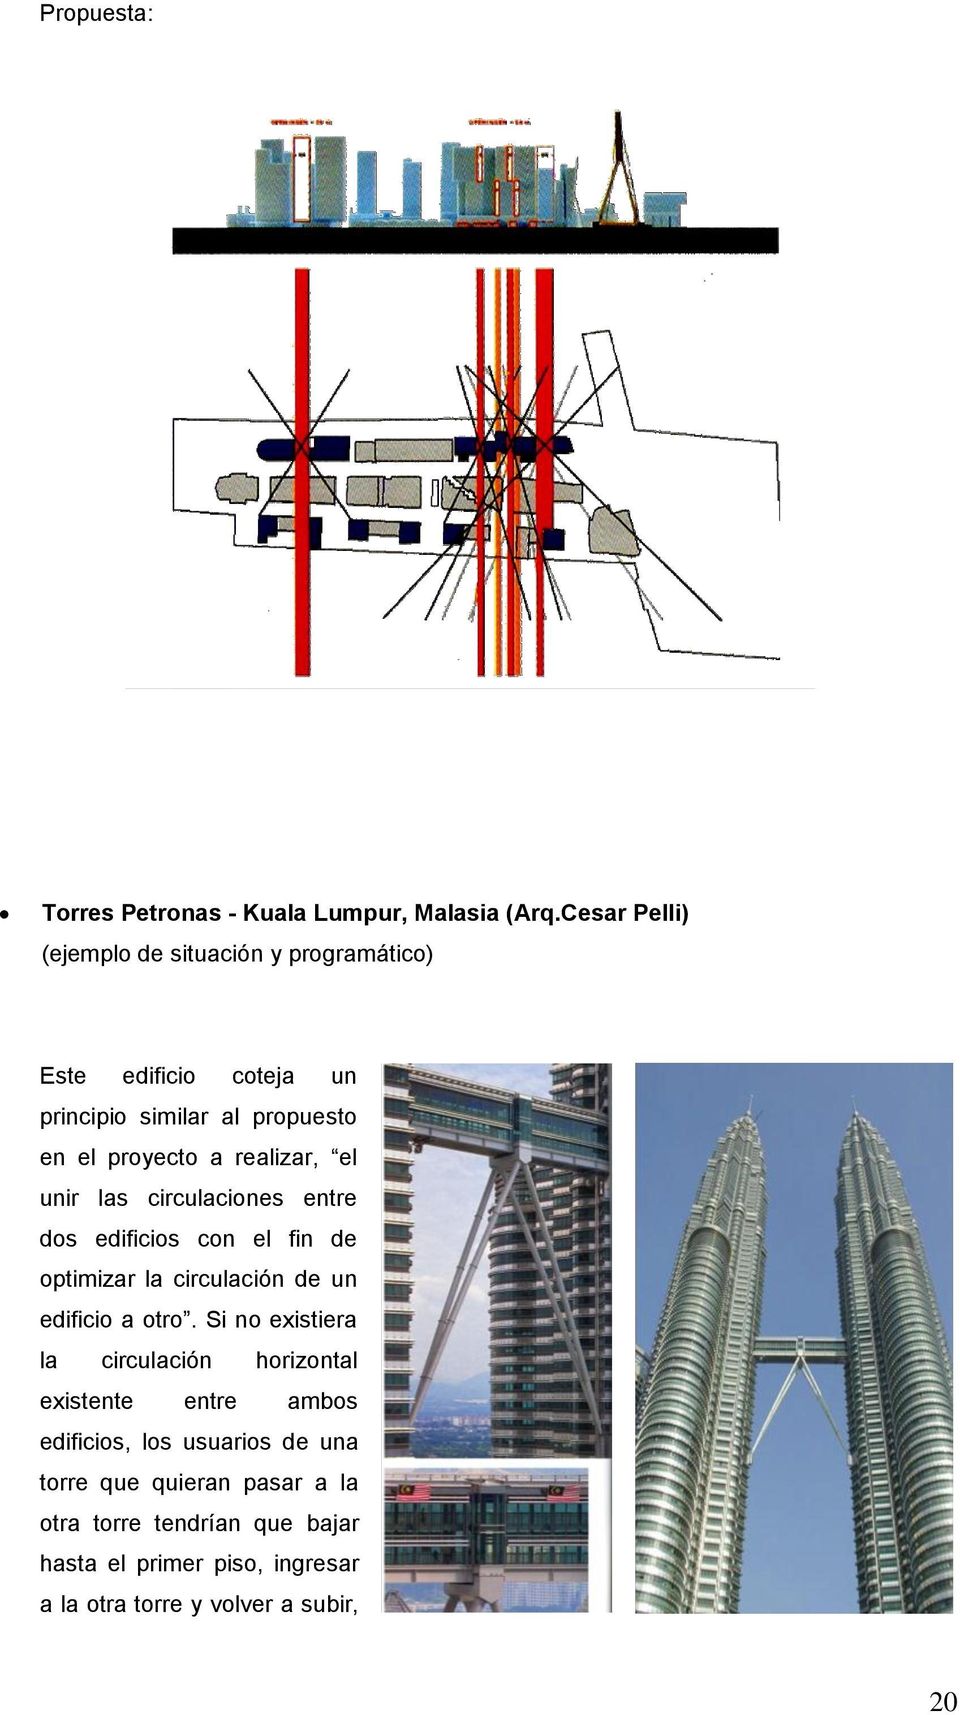 realizar, el unir las circulaciones entre dos edificios con el fin de optimizar la circulación de un edificio a otro.